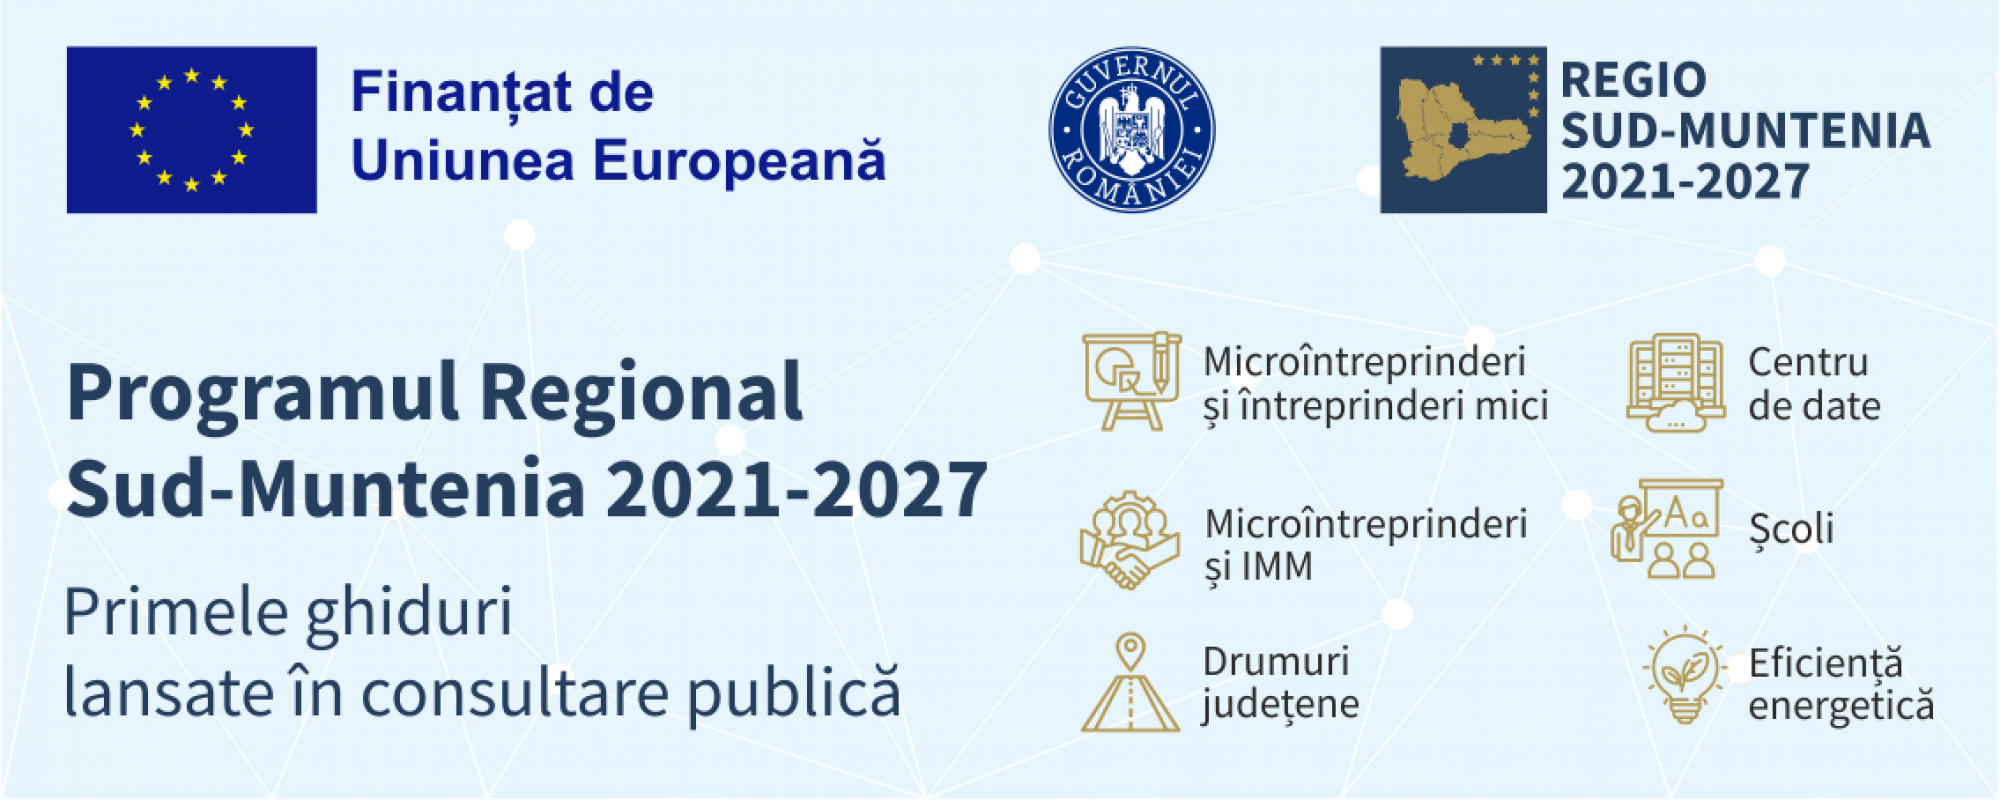 Primele ghiduri pentru mediul de afaceri din cadrul PR Sud-Muntenia 2021-2027, lansate în consultare publică!